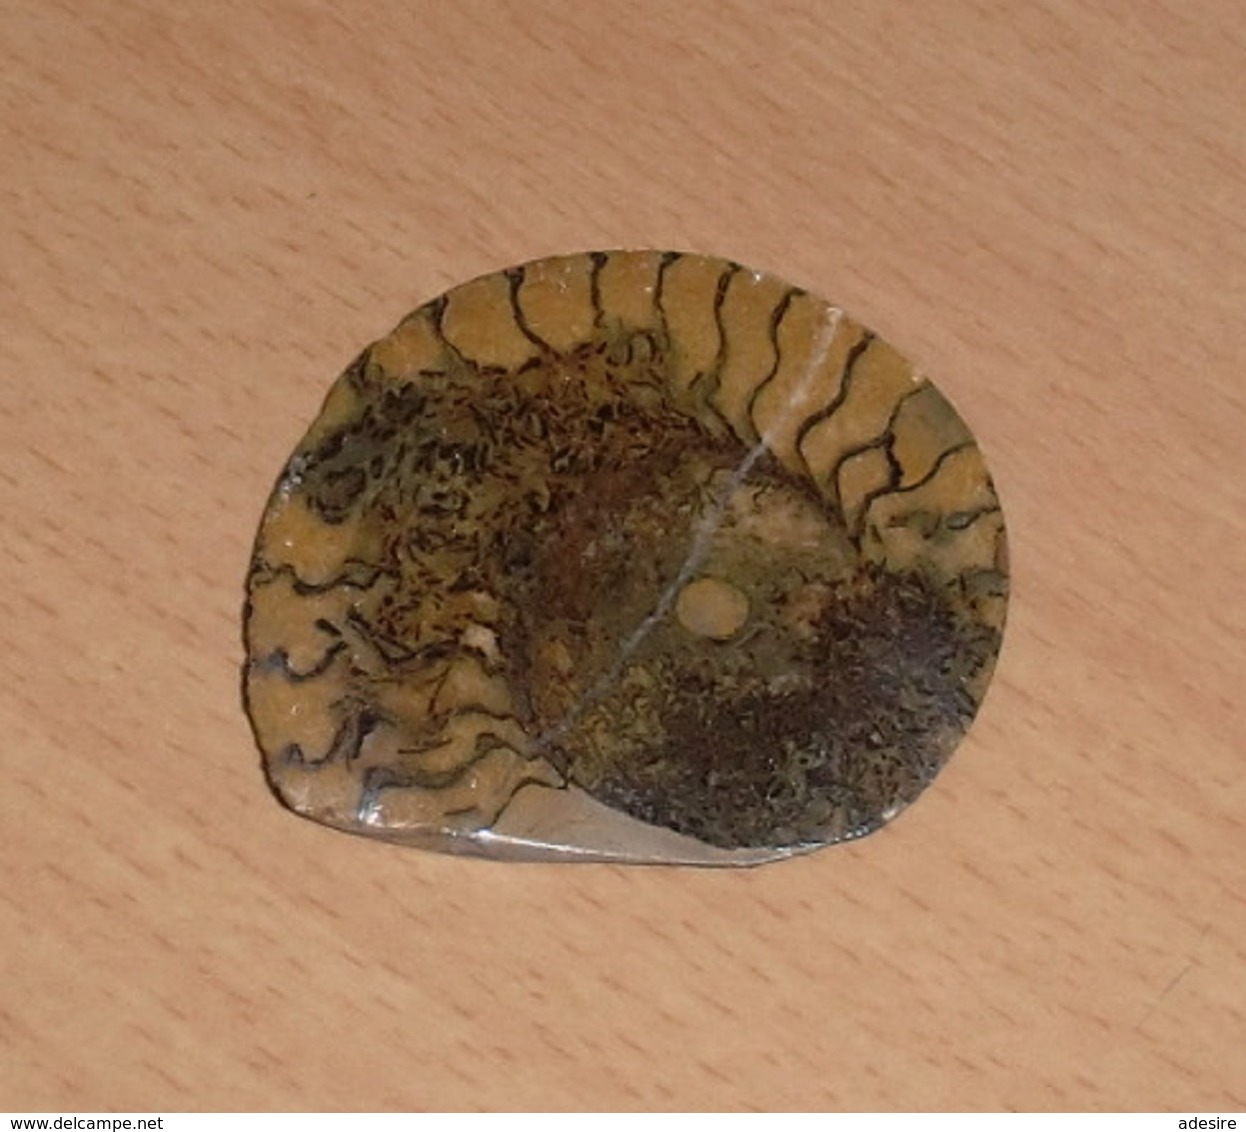 RARITÄT - FOSSIL … Versteinerte Schneckenmuschel Geschliffen Und Poliert, Wunderschönes Einzelstück, 7,5 X 6,3 X 1 Cm - Fossilien